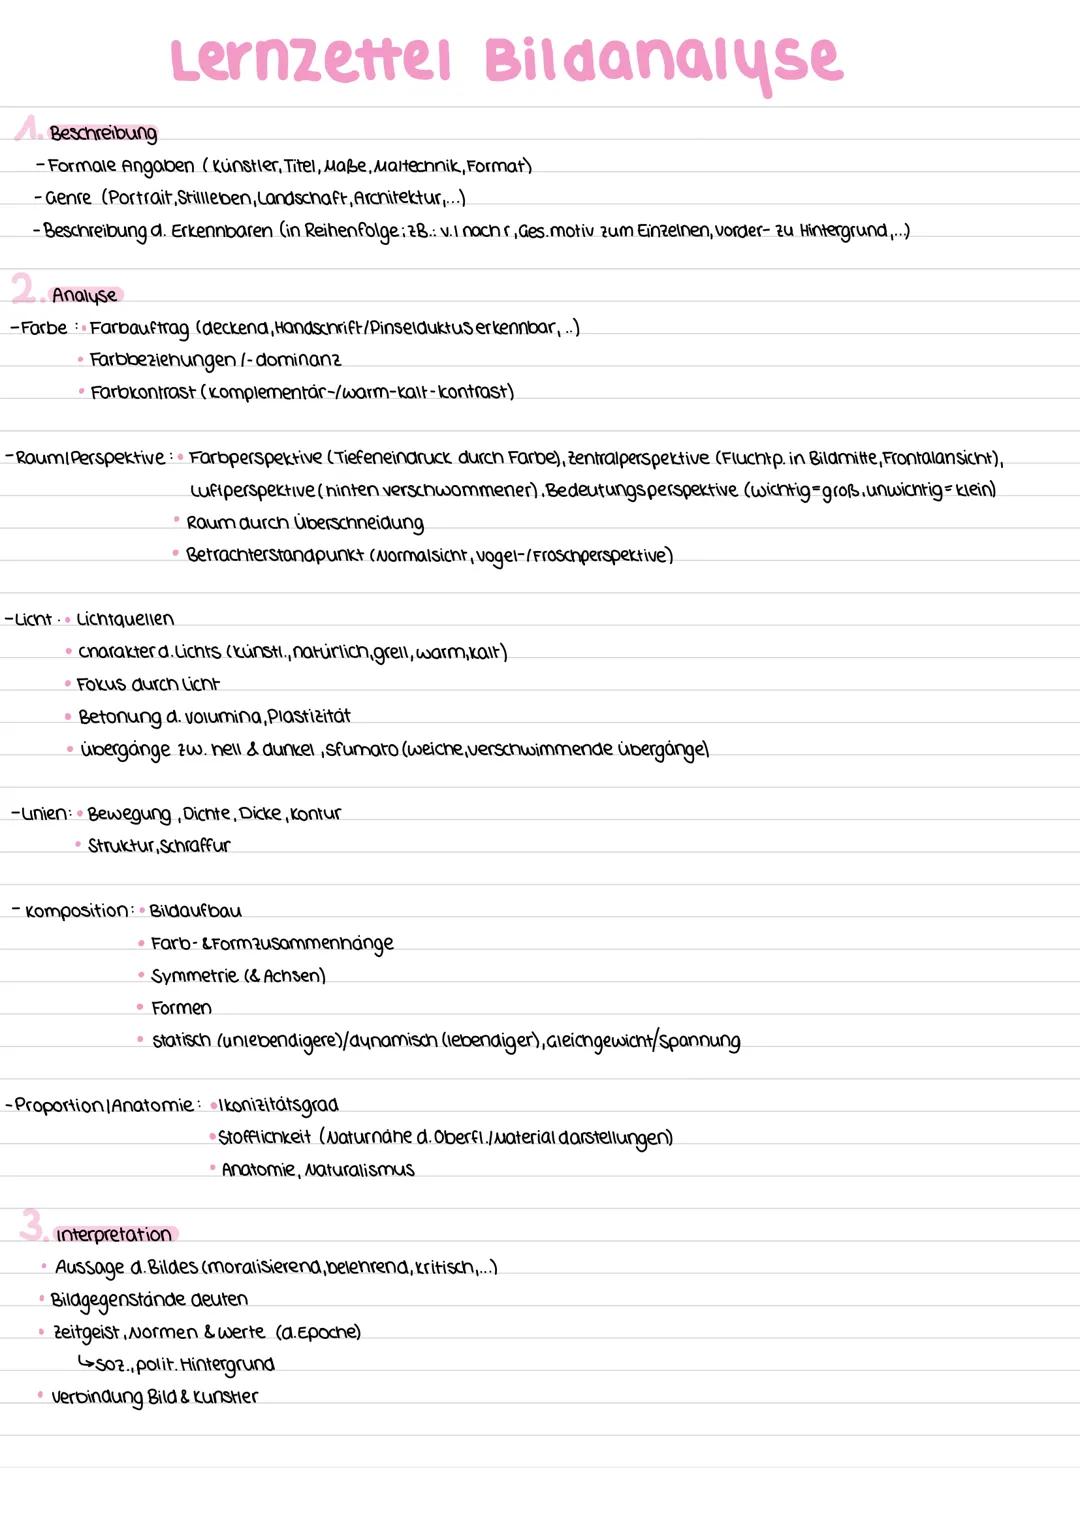 Lernzettel Bildanalyse
A. Beschreibung
-Formale Angaben (Künstler, Titel, Maße, Maltechnik, Format)
-Genre (Portrait, Stillleben, Landschaft